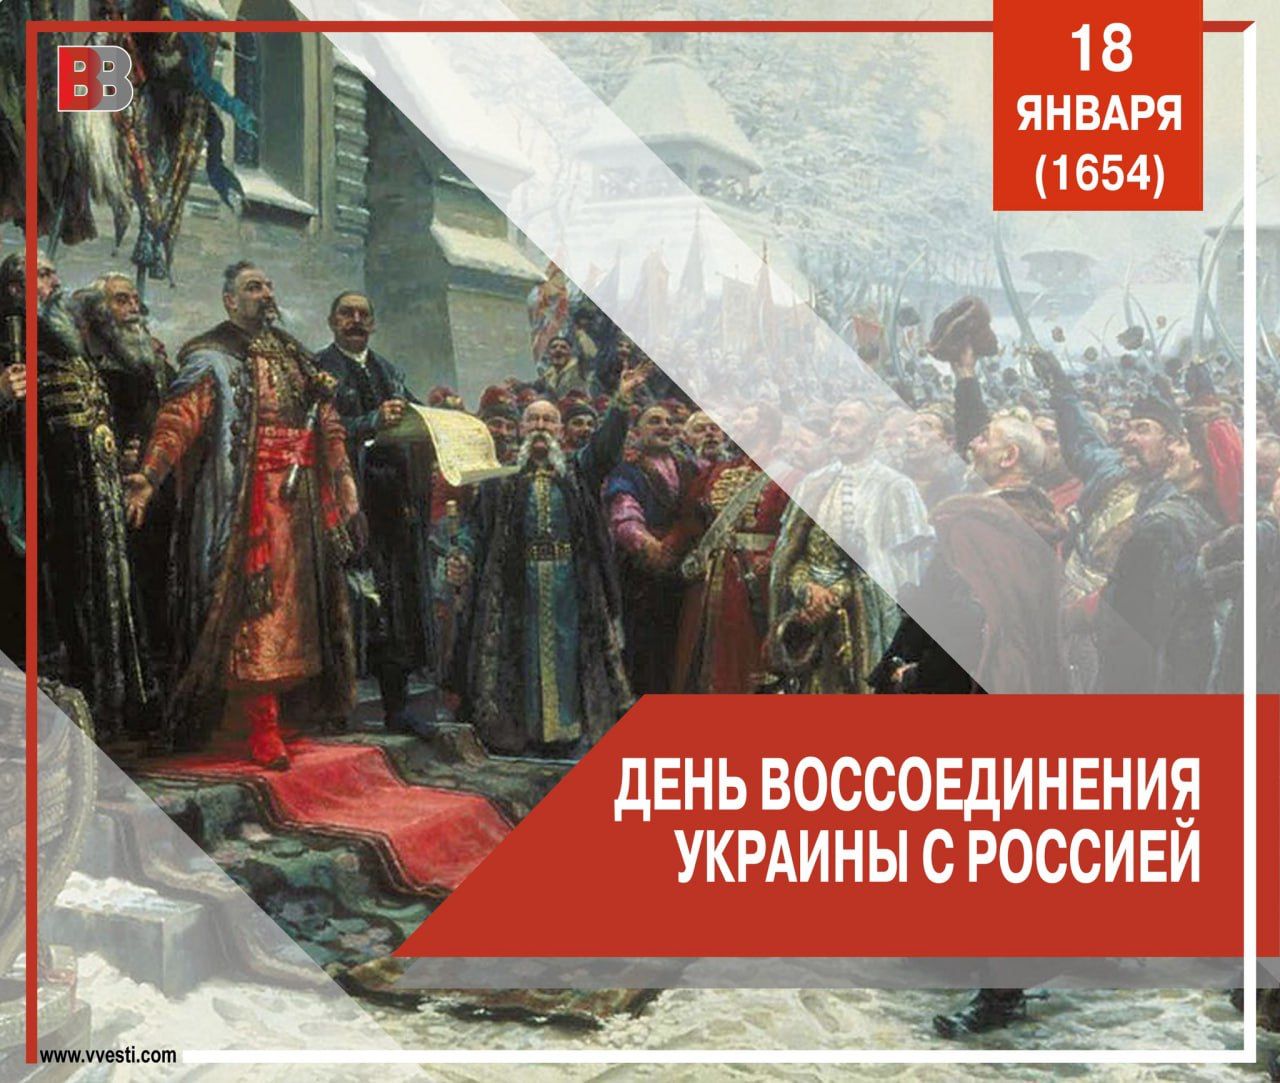 Воссоединение Украины с Россией в 1654 году.